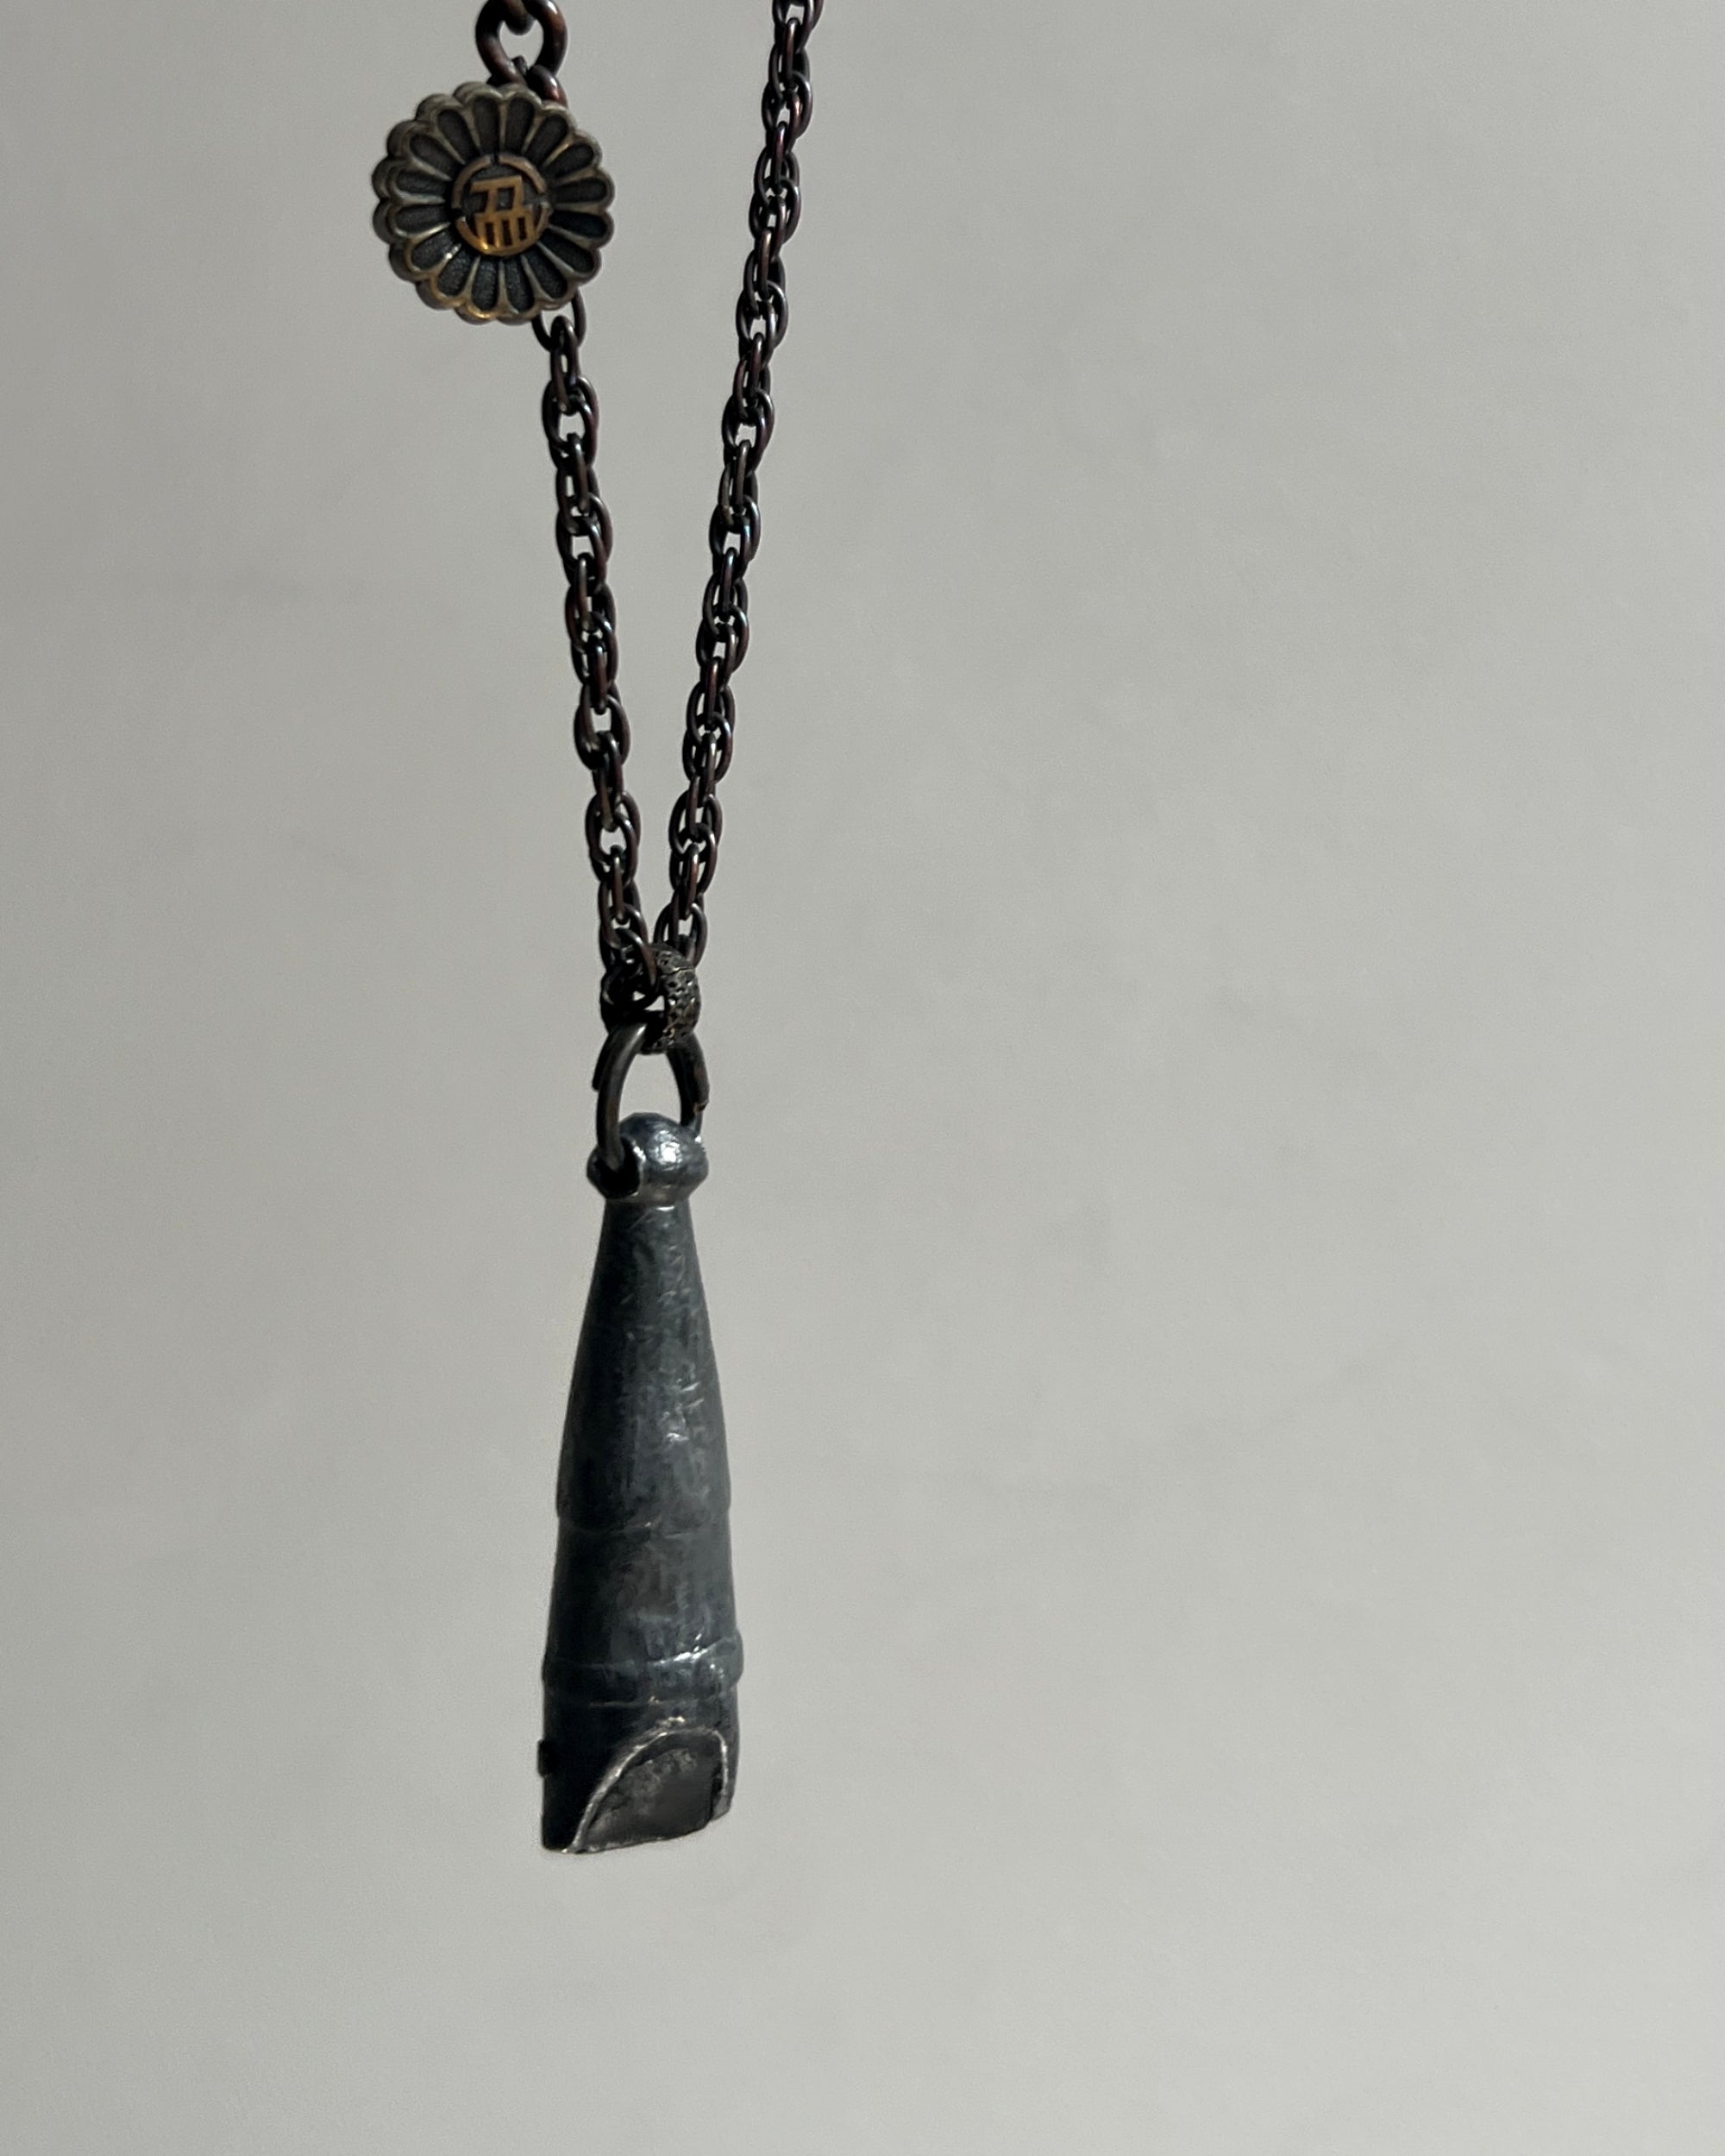 modern marcel : vintage whistle necklace